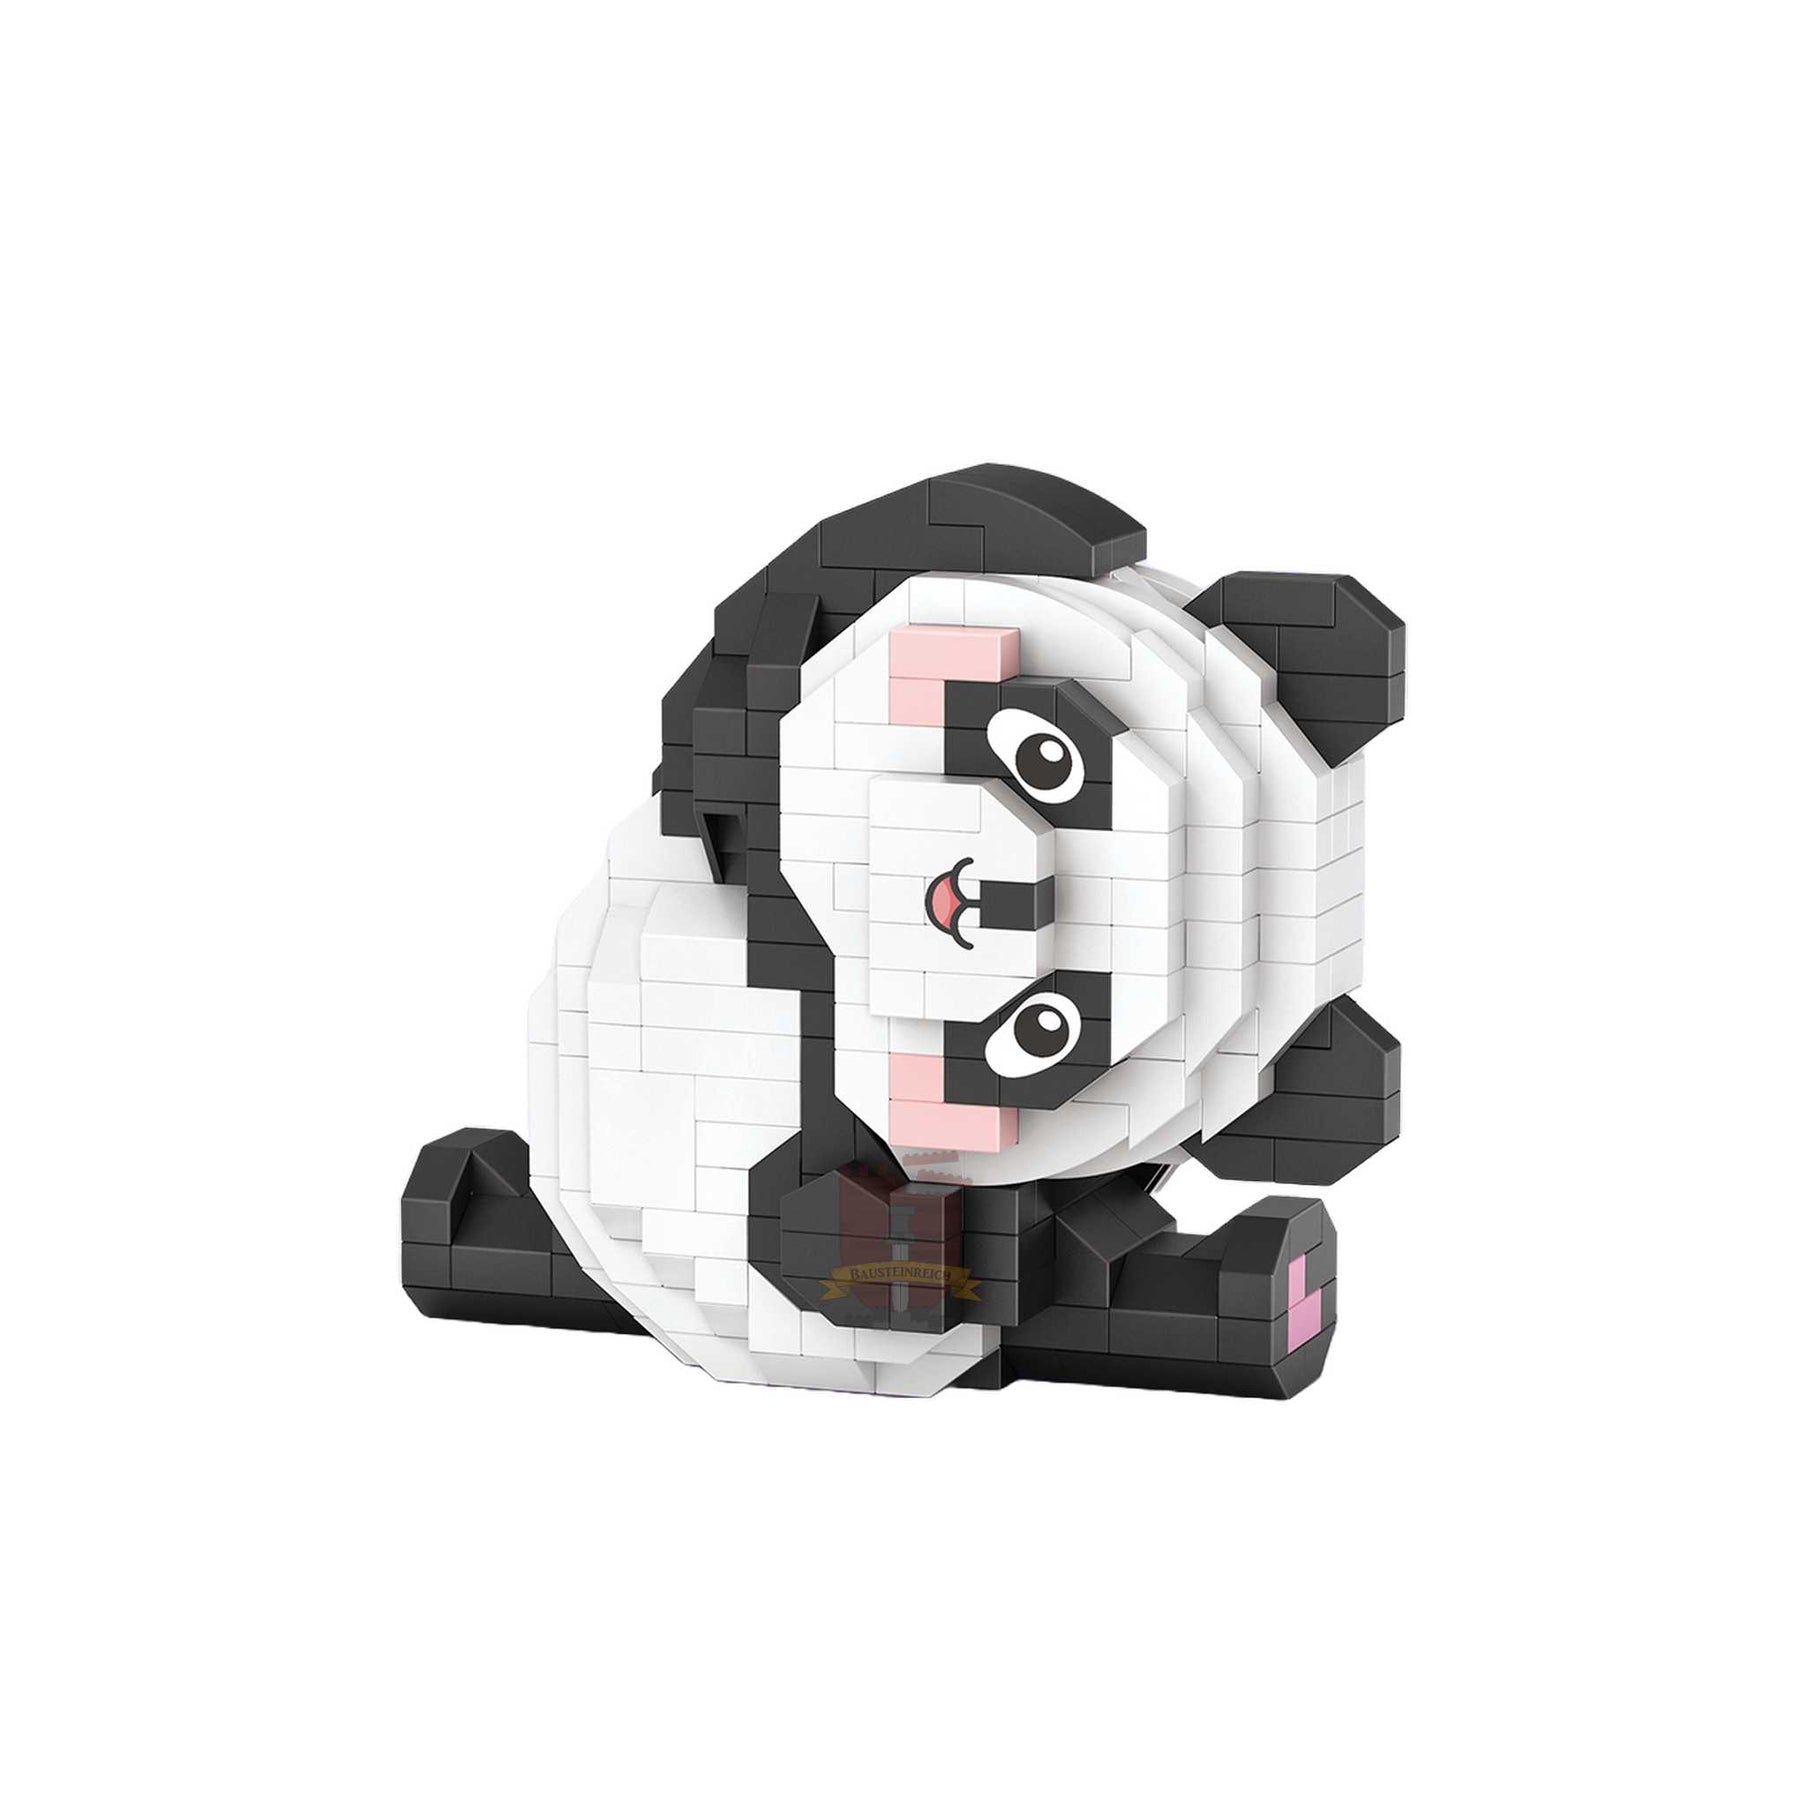 8802 - Yoga Panda (LOZ)